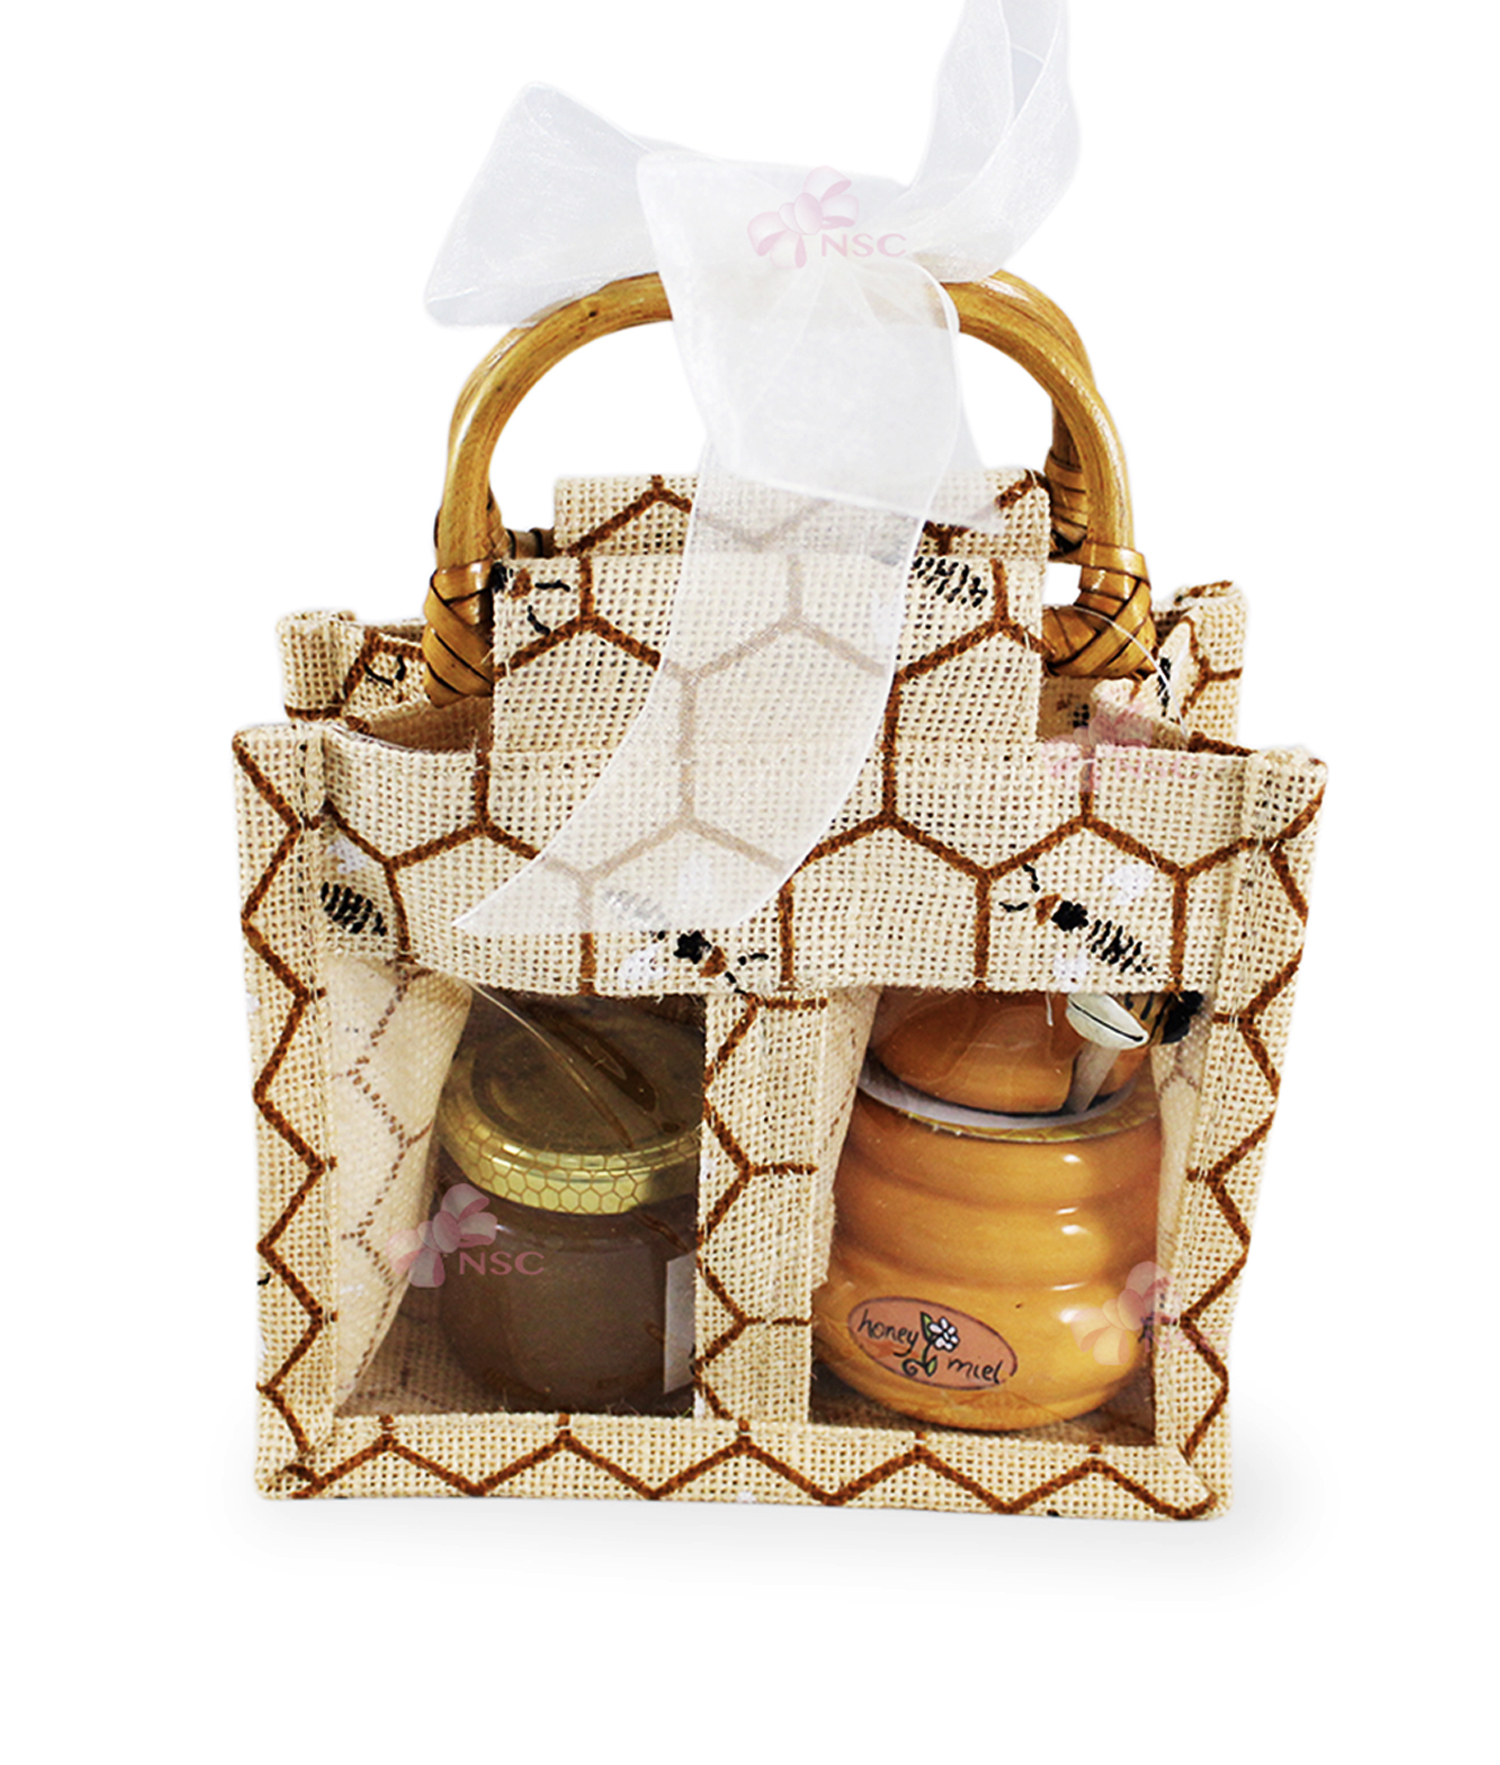 Bomboniera Santa Cresima in vasetti miele, decorazione TAO in legno